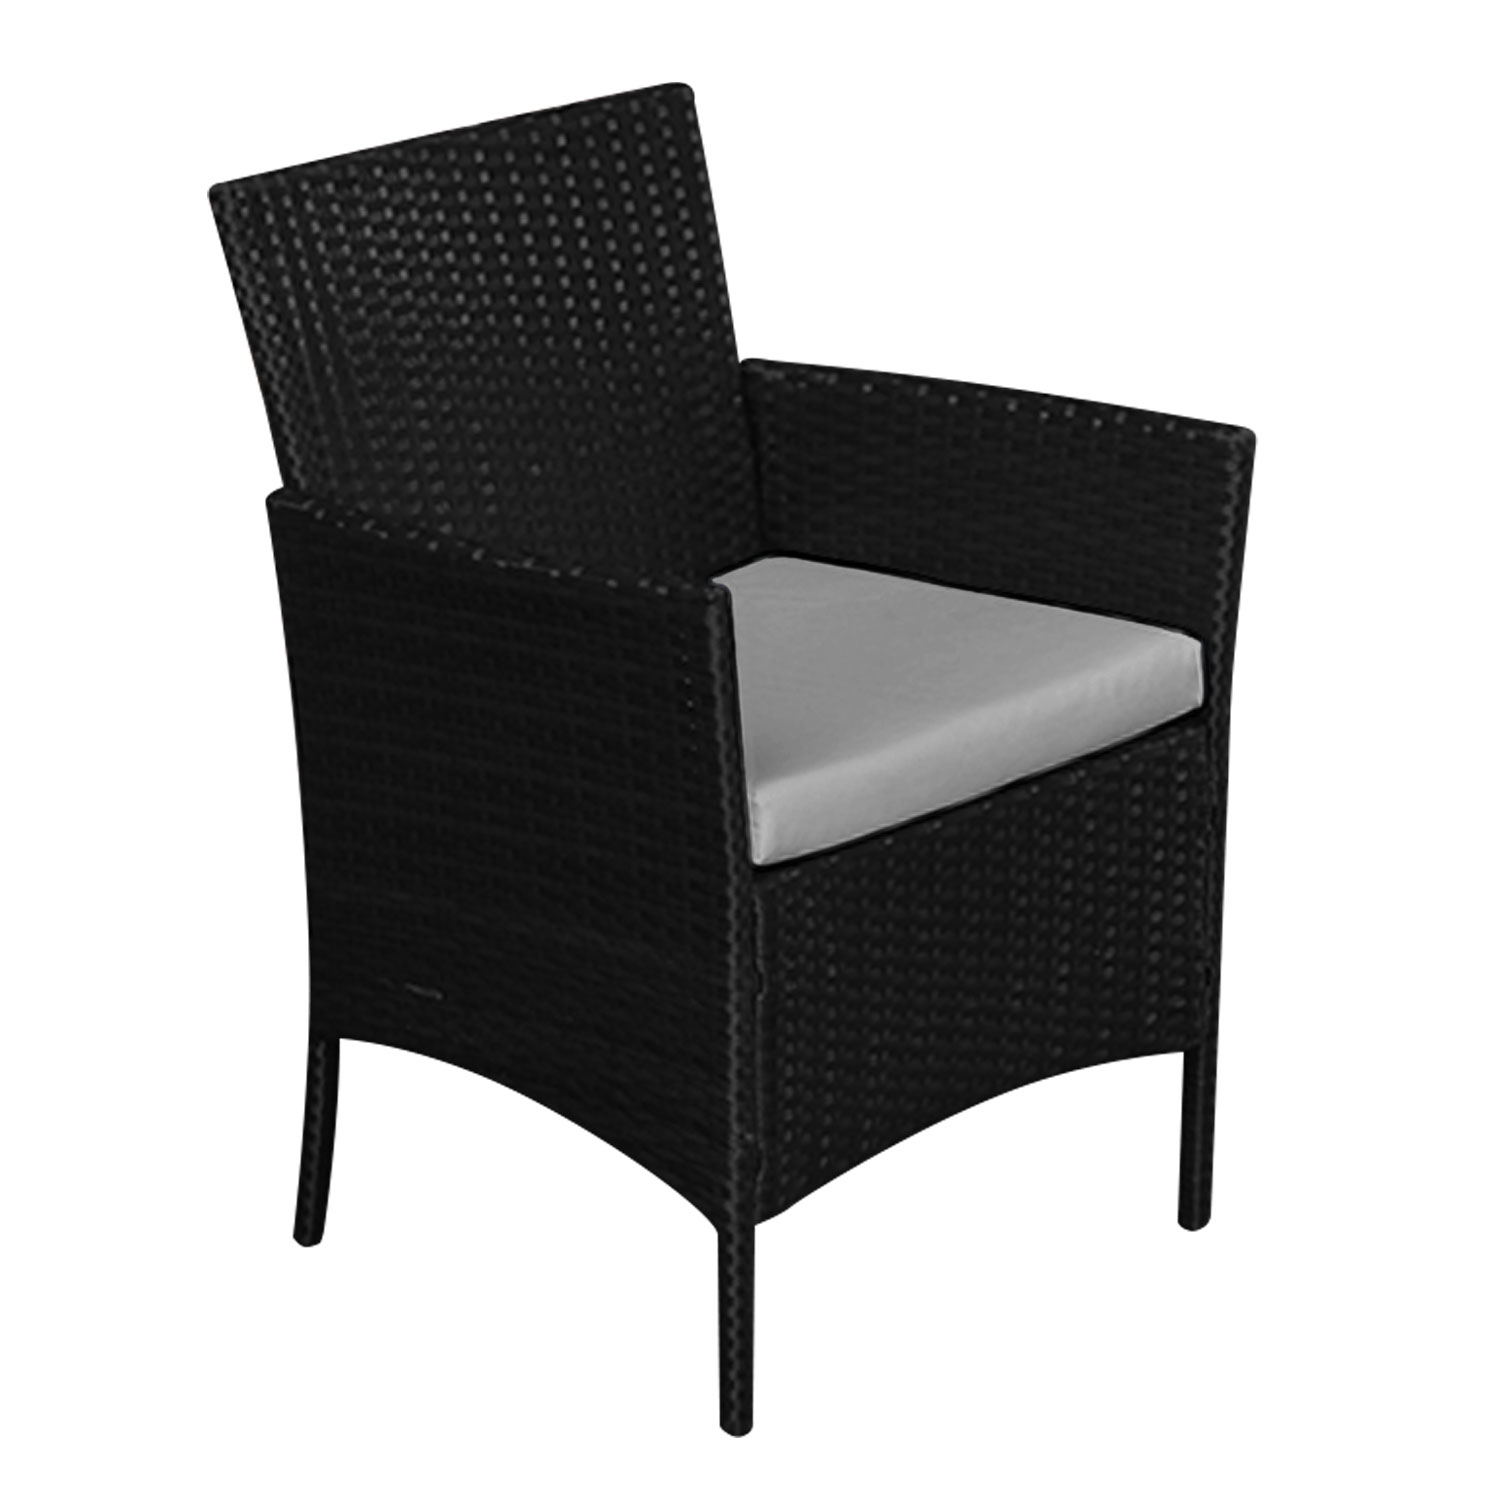 Gartenmöbel CORFOU aus schwarzem Kunstharzgeflecht 4 Sitzplätze - graue Kissen